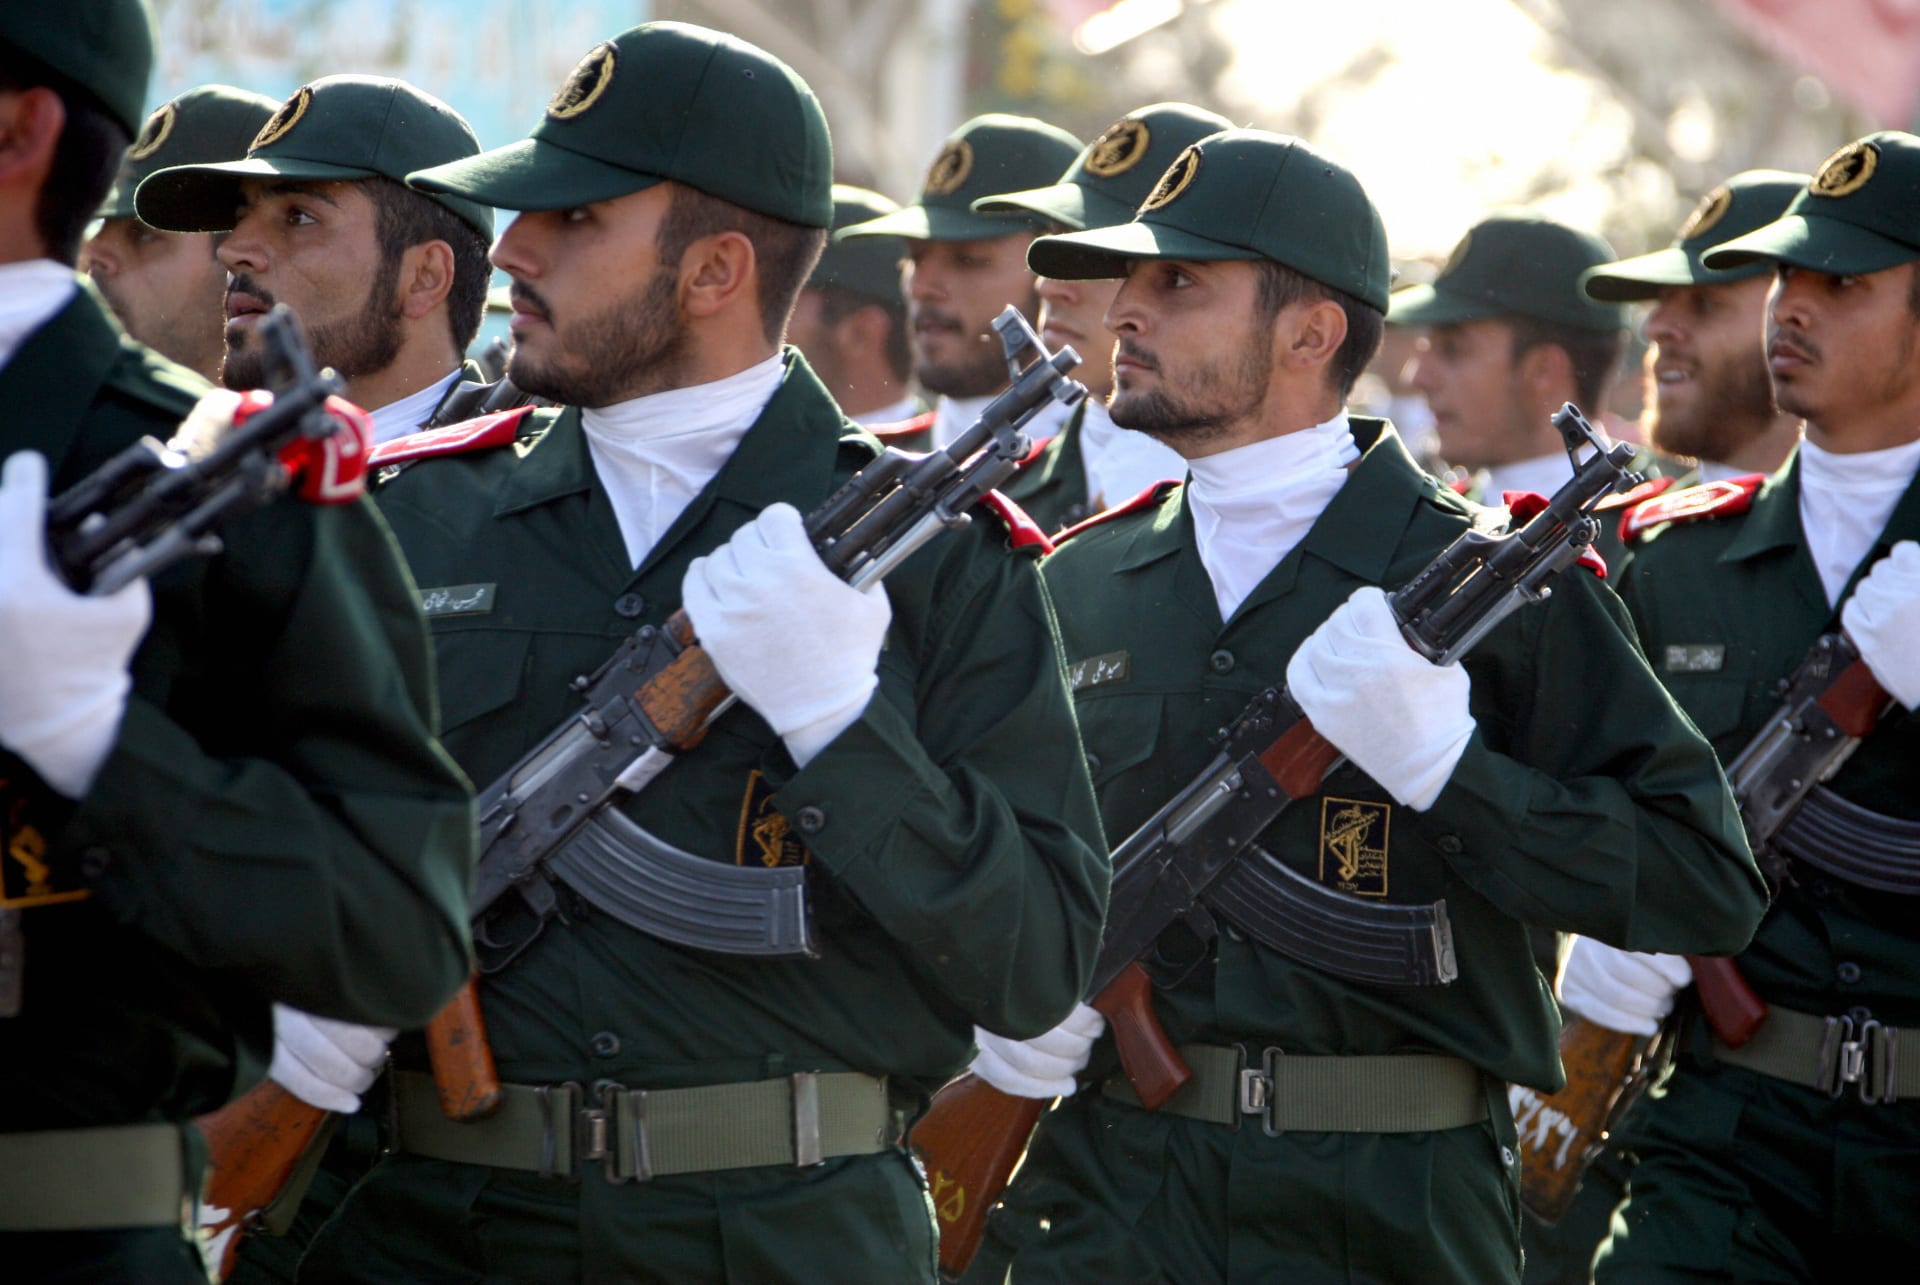 "الحرس الثوري" الإيراني يعلن قصف "مركز تجسس" في كردستان العراق